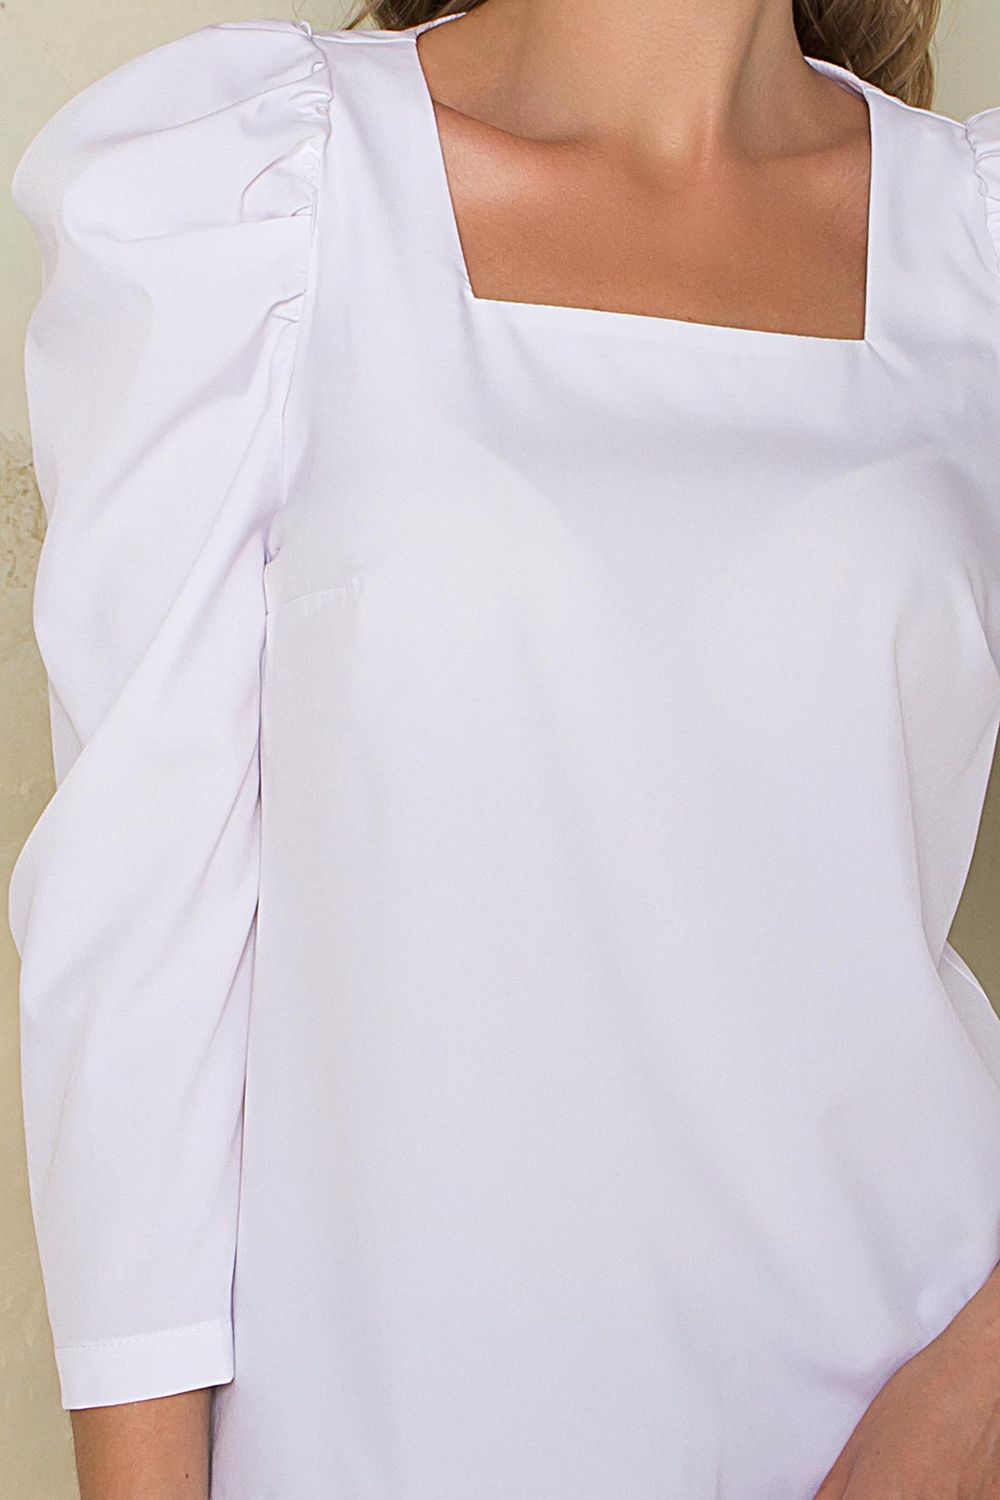 Нарядная белая блузка с рюшами - фото